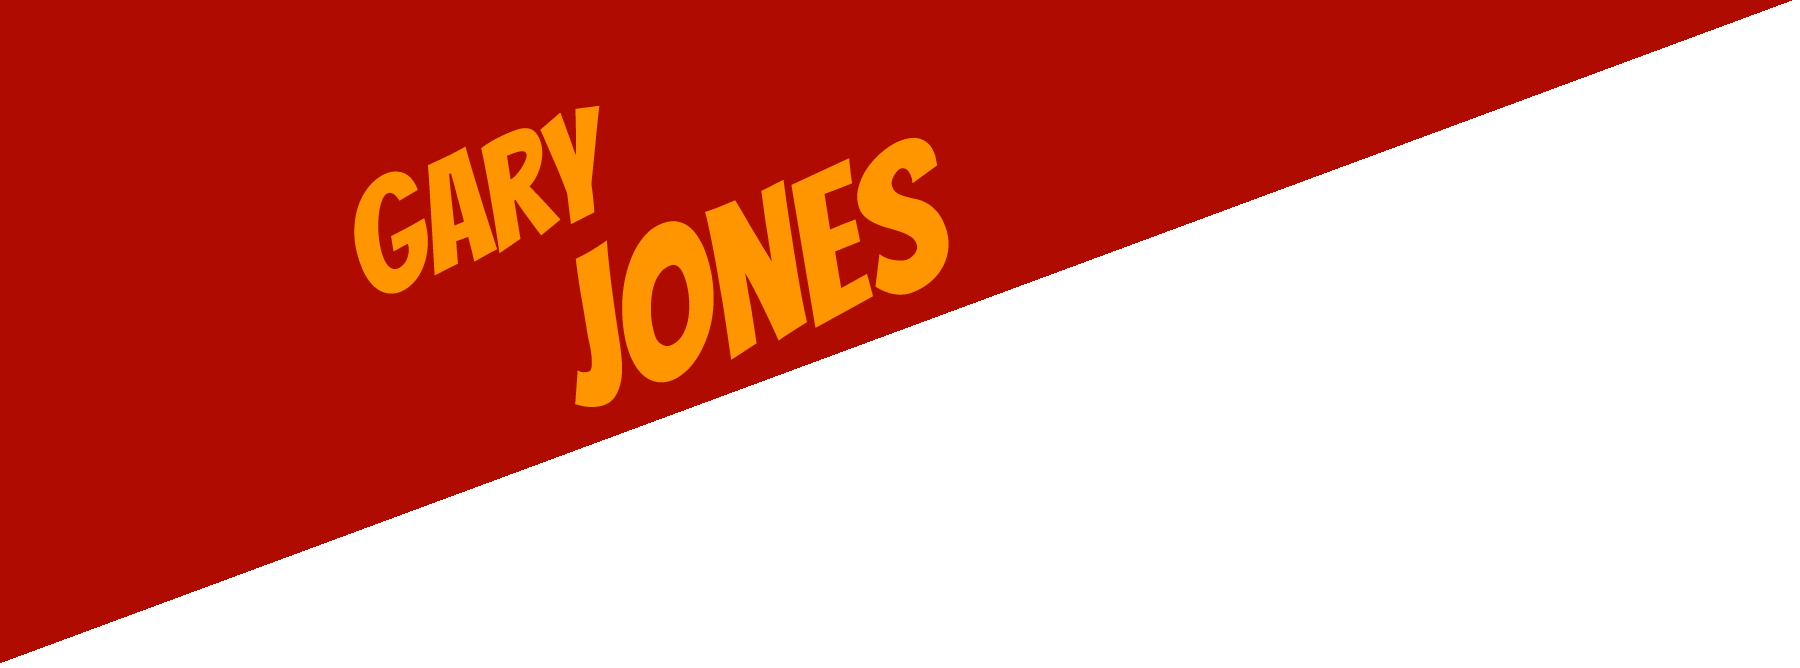 Gary Jones